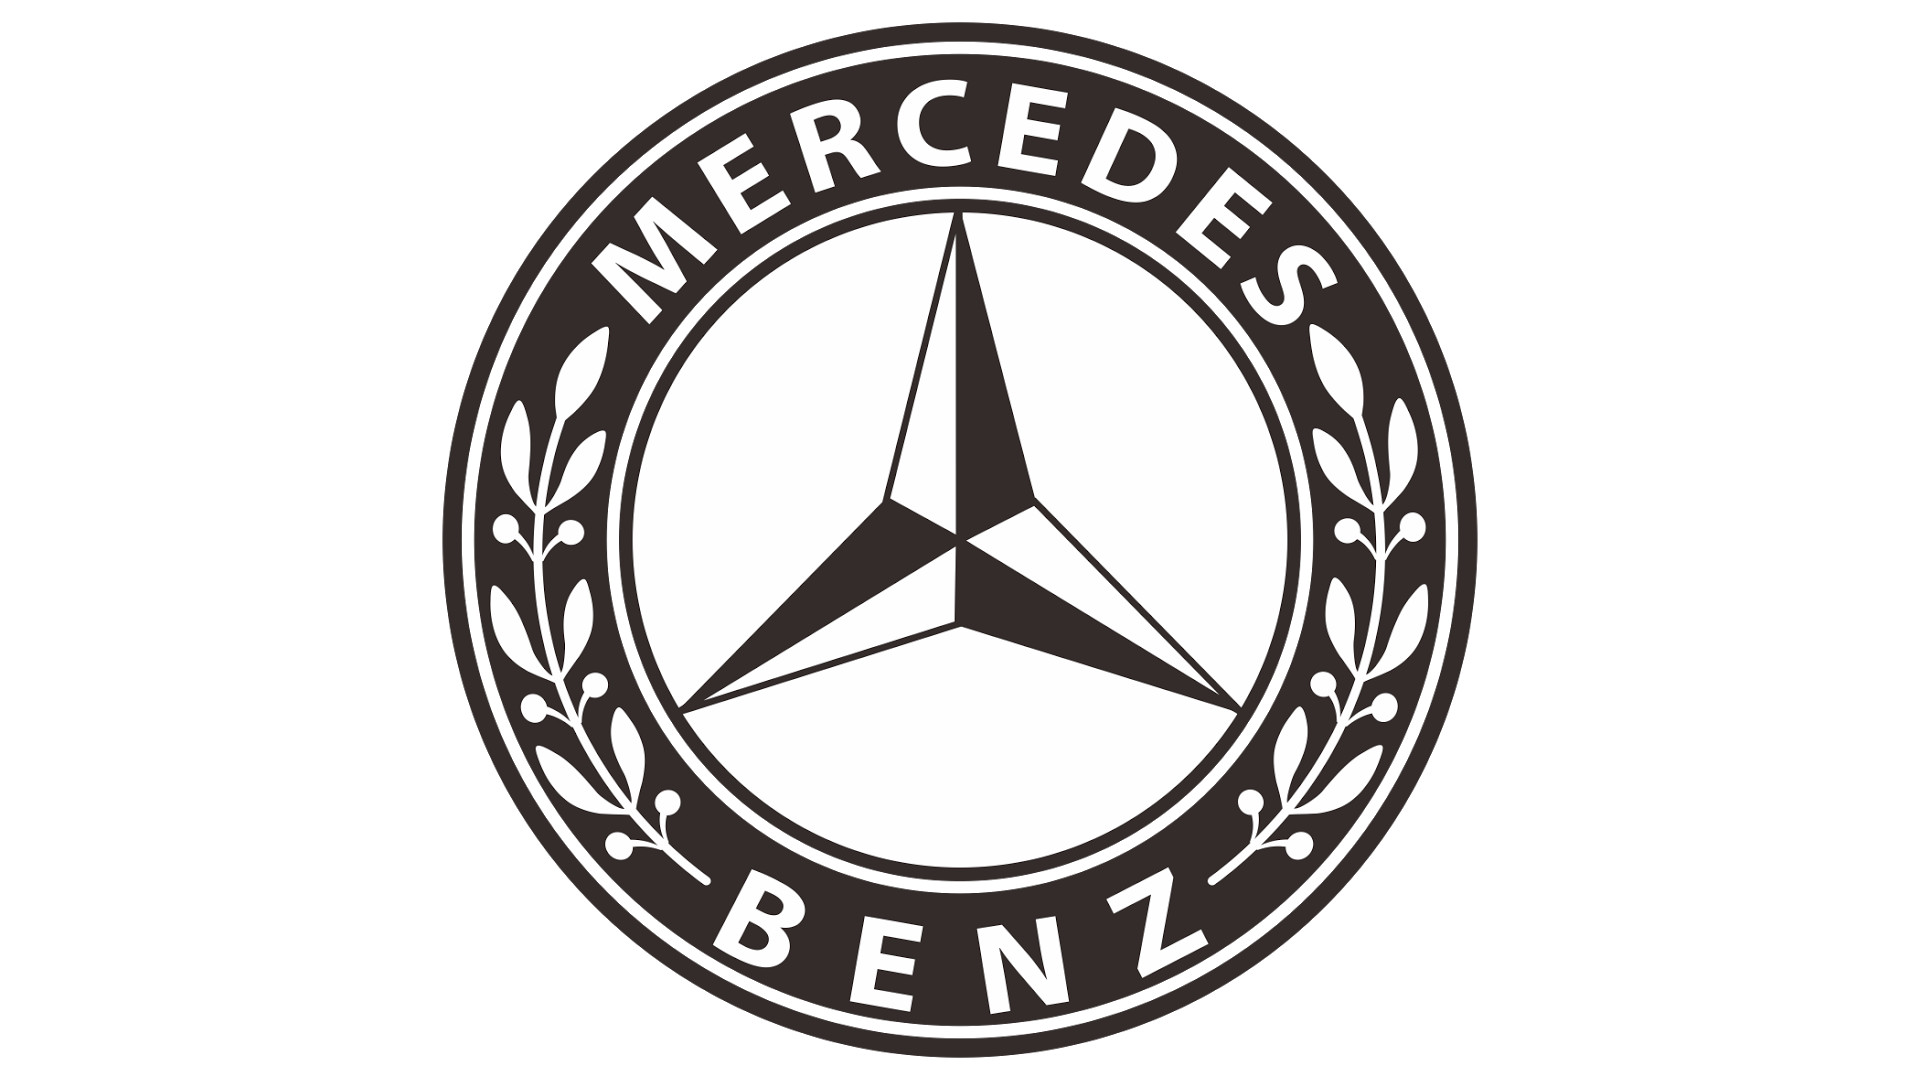 Mercedes Benz Emblem 1926 HD 1080p